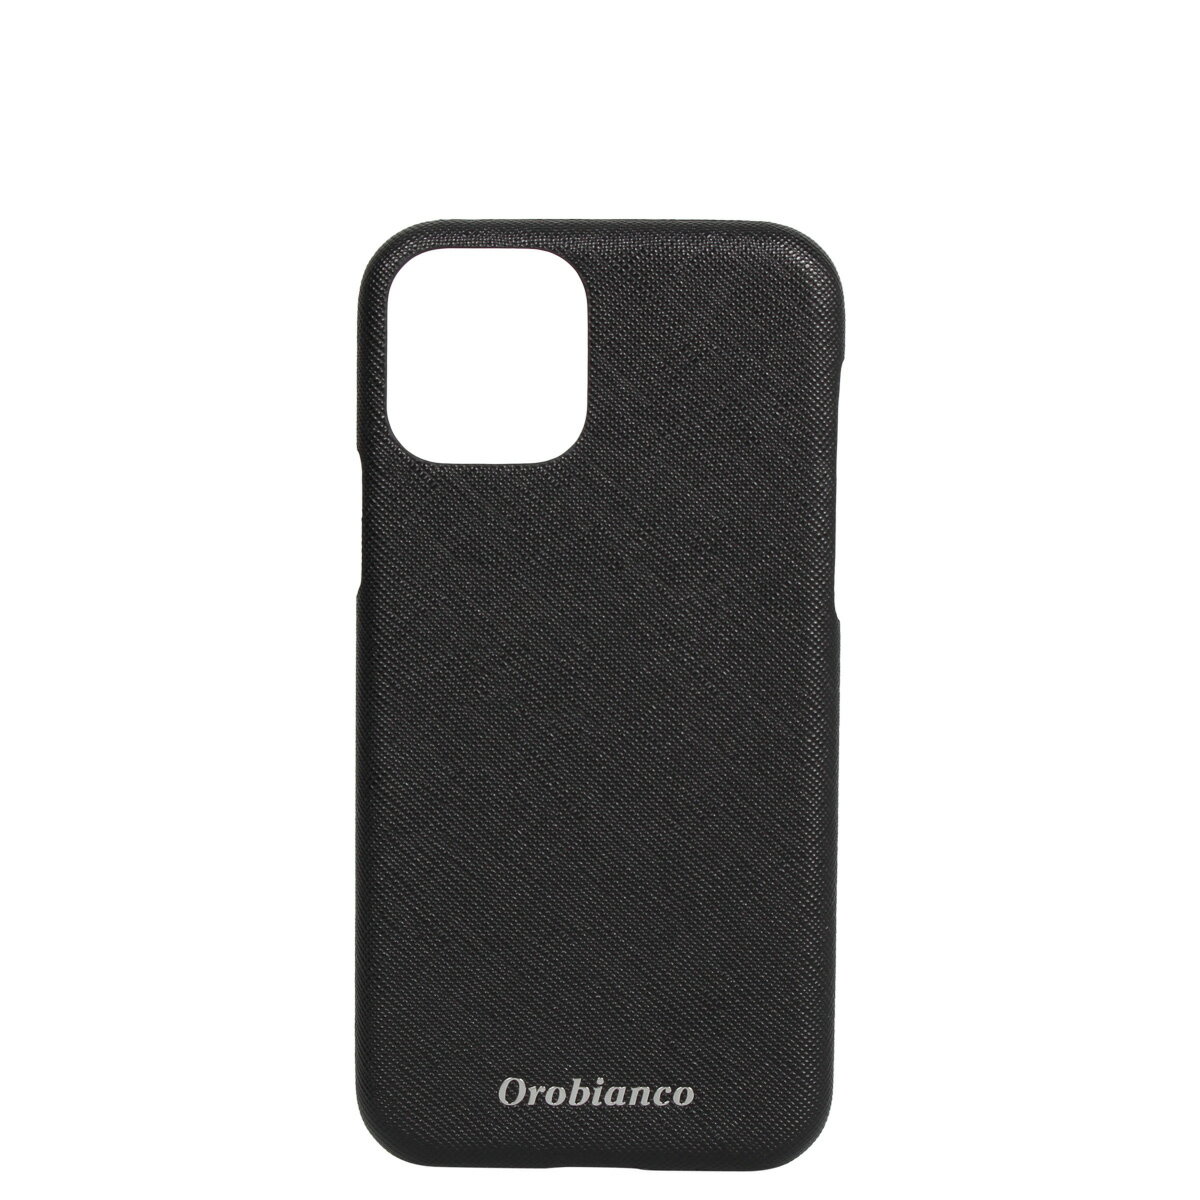 Orobianco PU LEATHER BACK CASE オロビアンコ iPhone11 Pro ケース スマホケース 携帯 アイフォン メンズ レディース サフィアーノ調 ブラック ネイビー カーキ レッド 黒